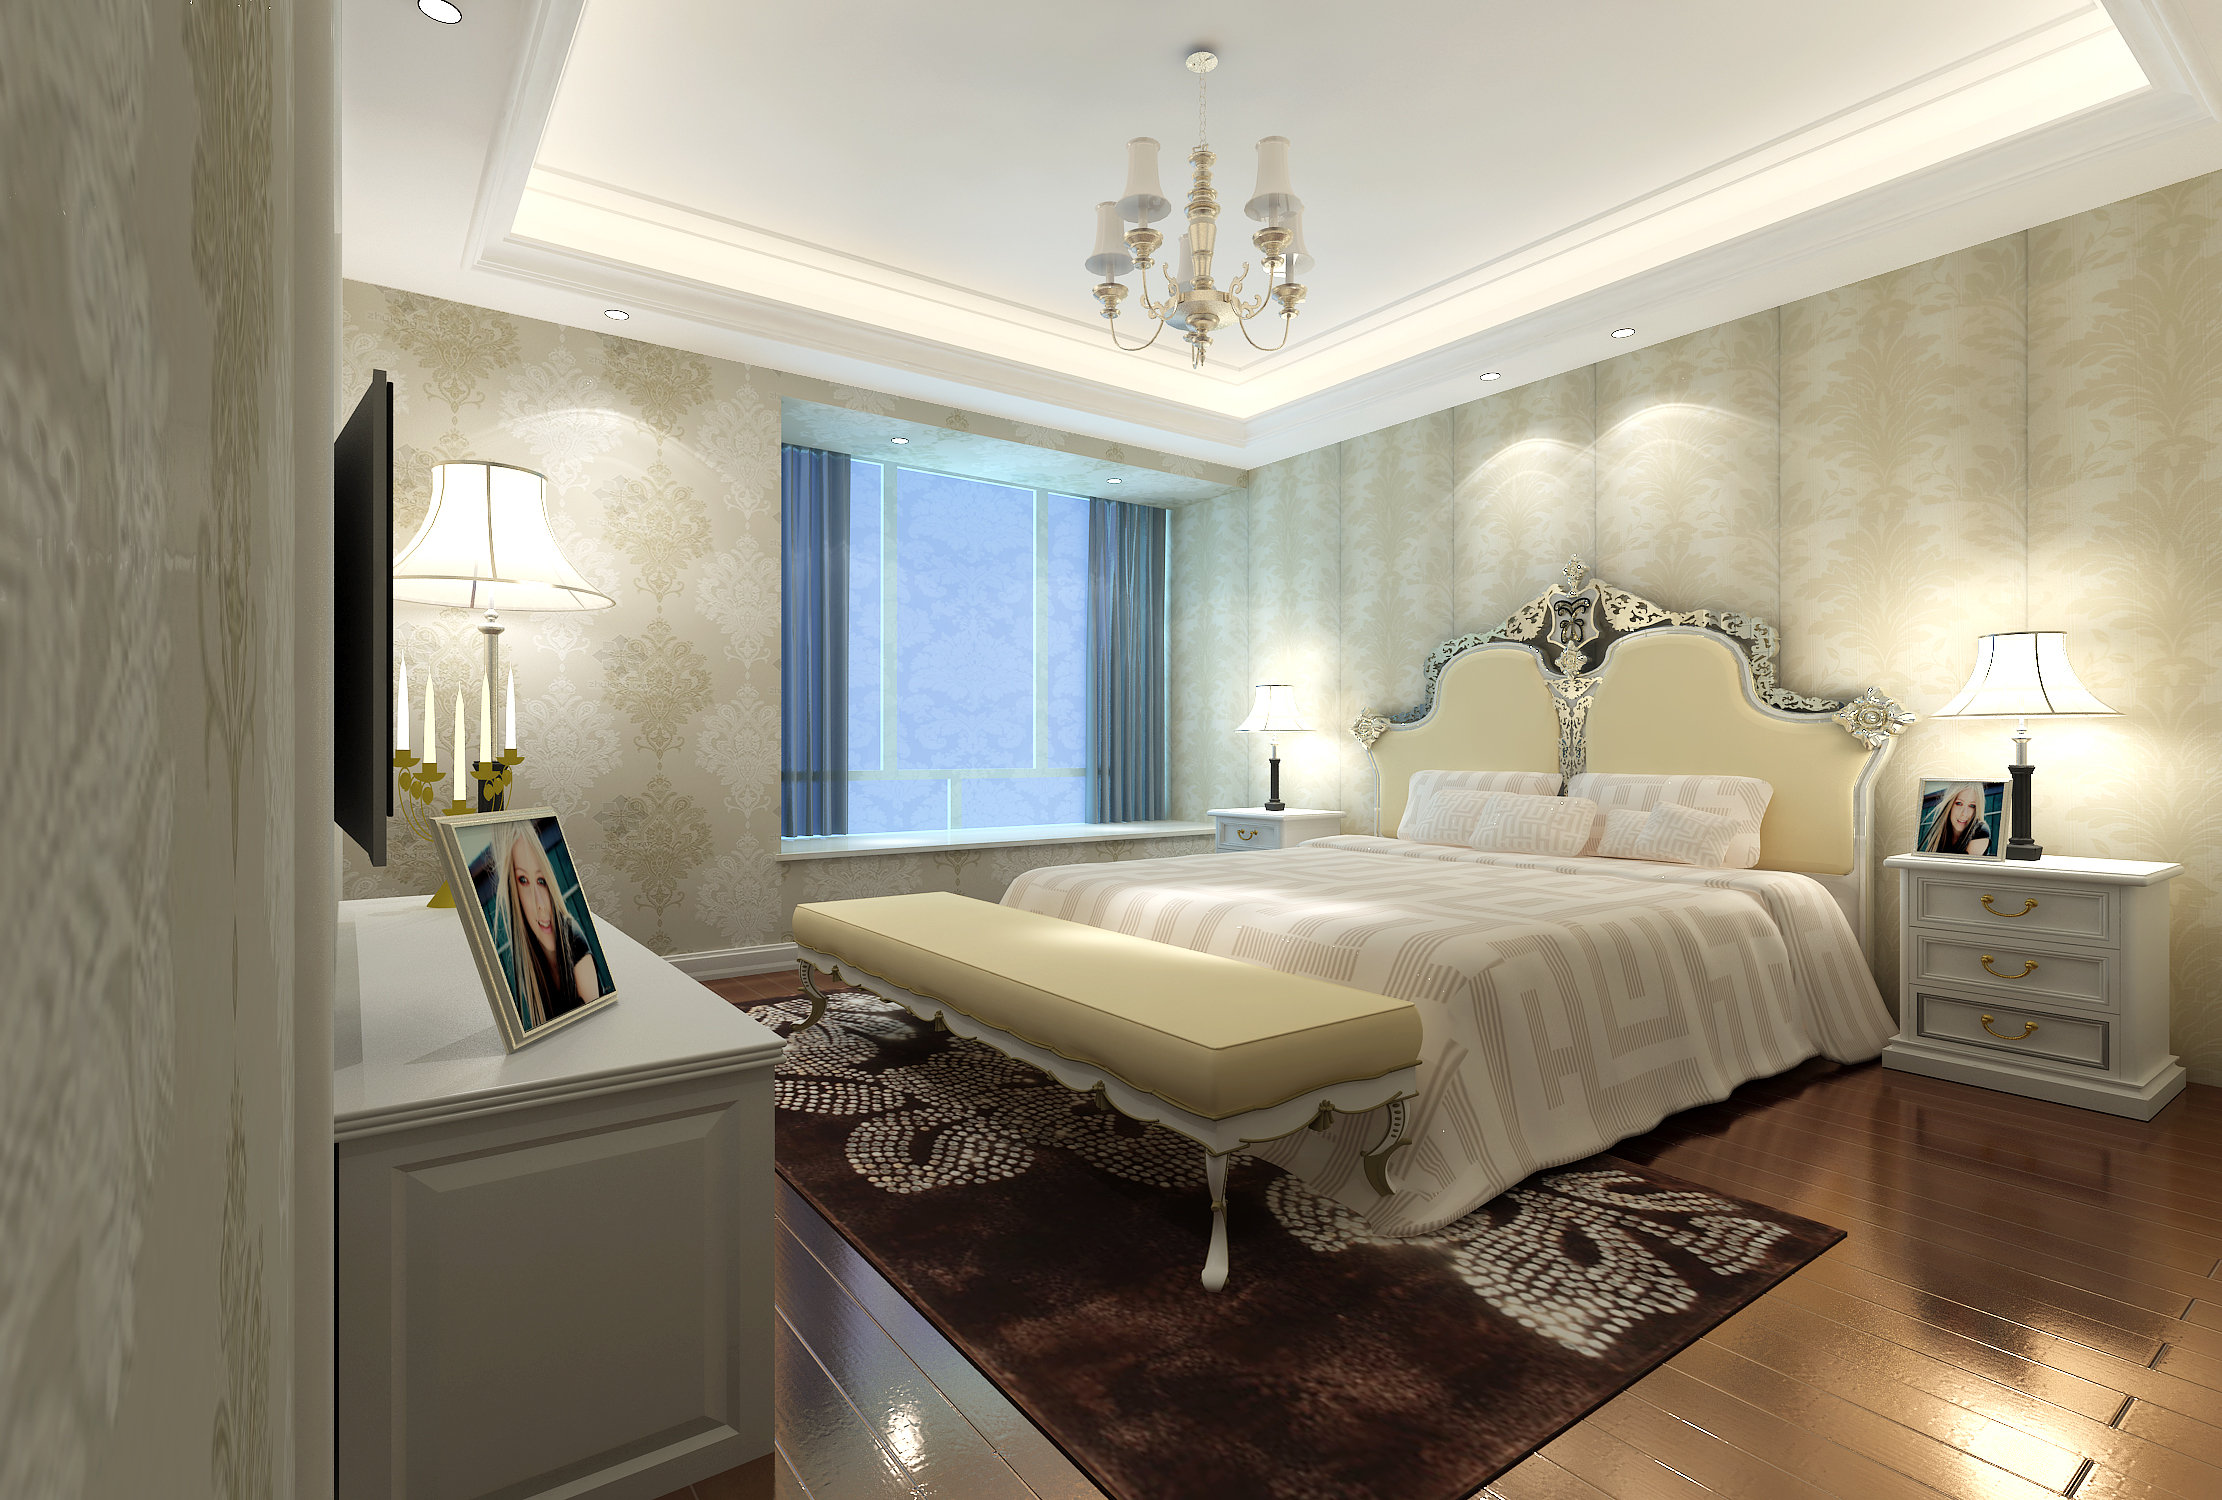 欧式风格卧室效果图_合肥绚丽效果图-专业高效的效果图制作公司